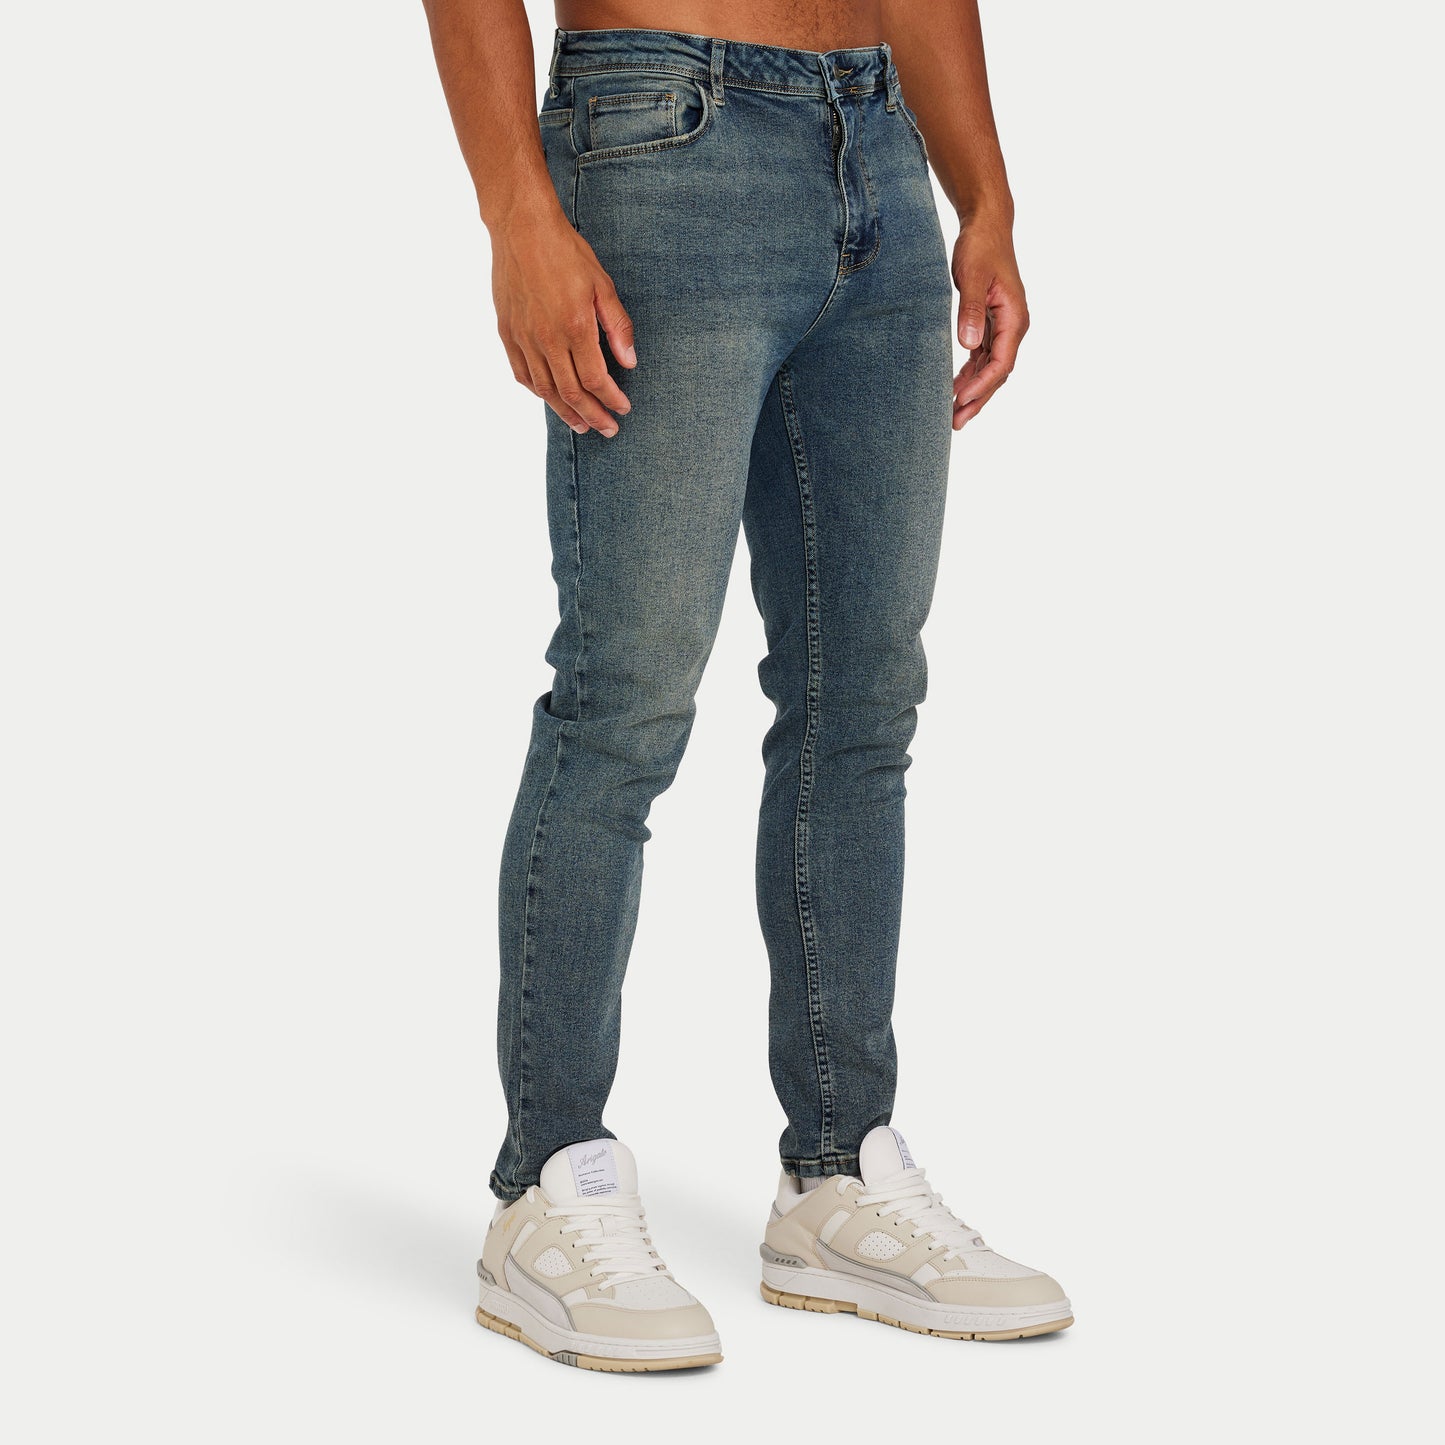 511 Mid Blue Denim Jeans For Men Skinny Fit